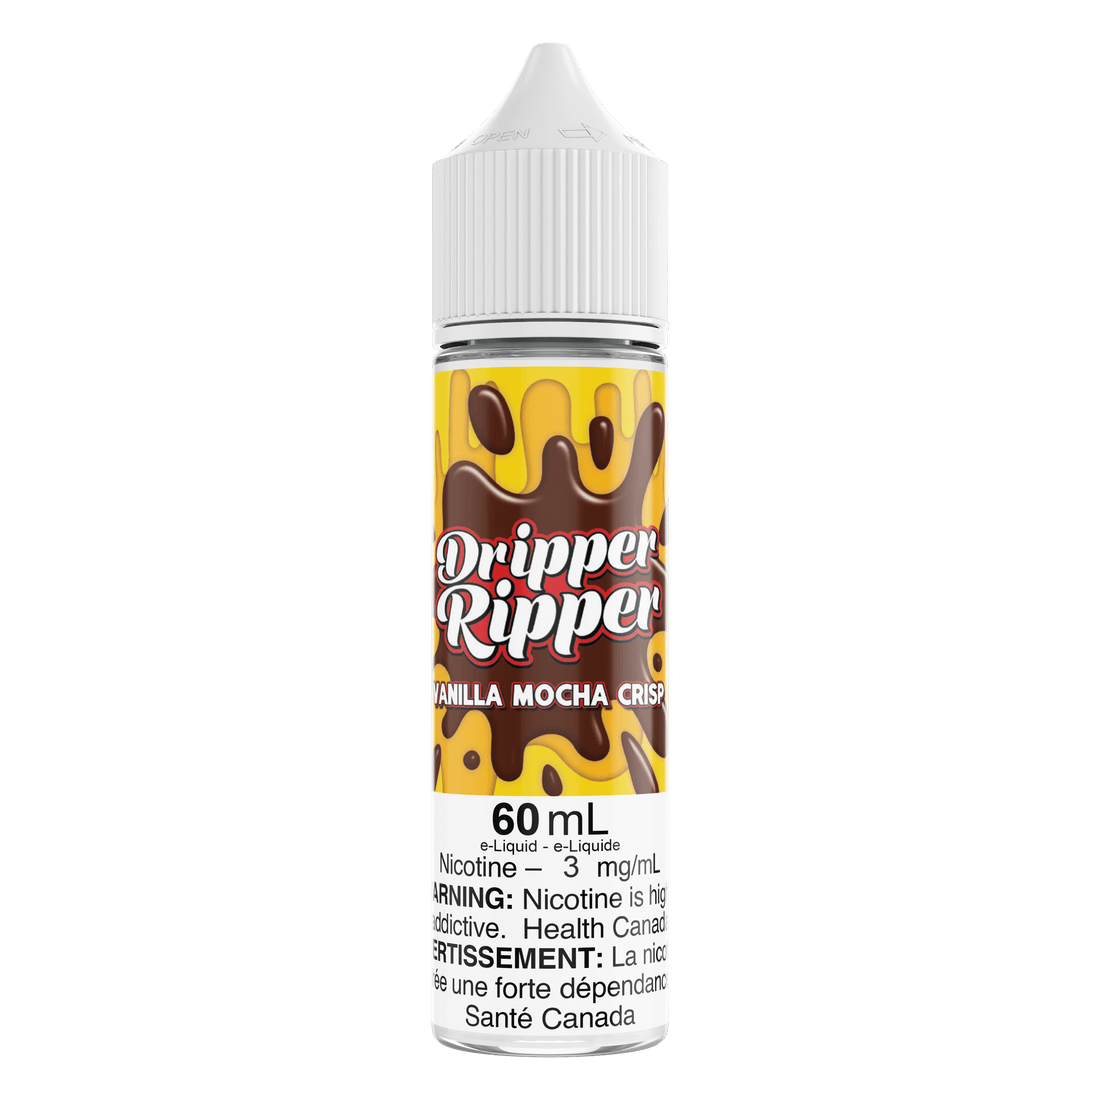 Dripper Ripper Vanilla Mocha Crisp - Vapor Shoppe